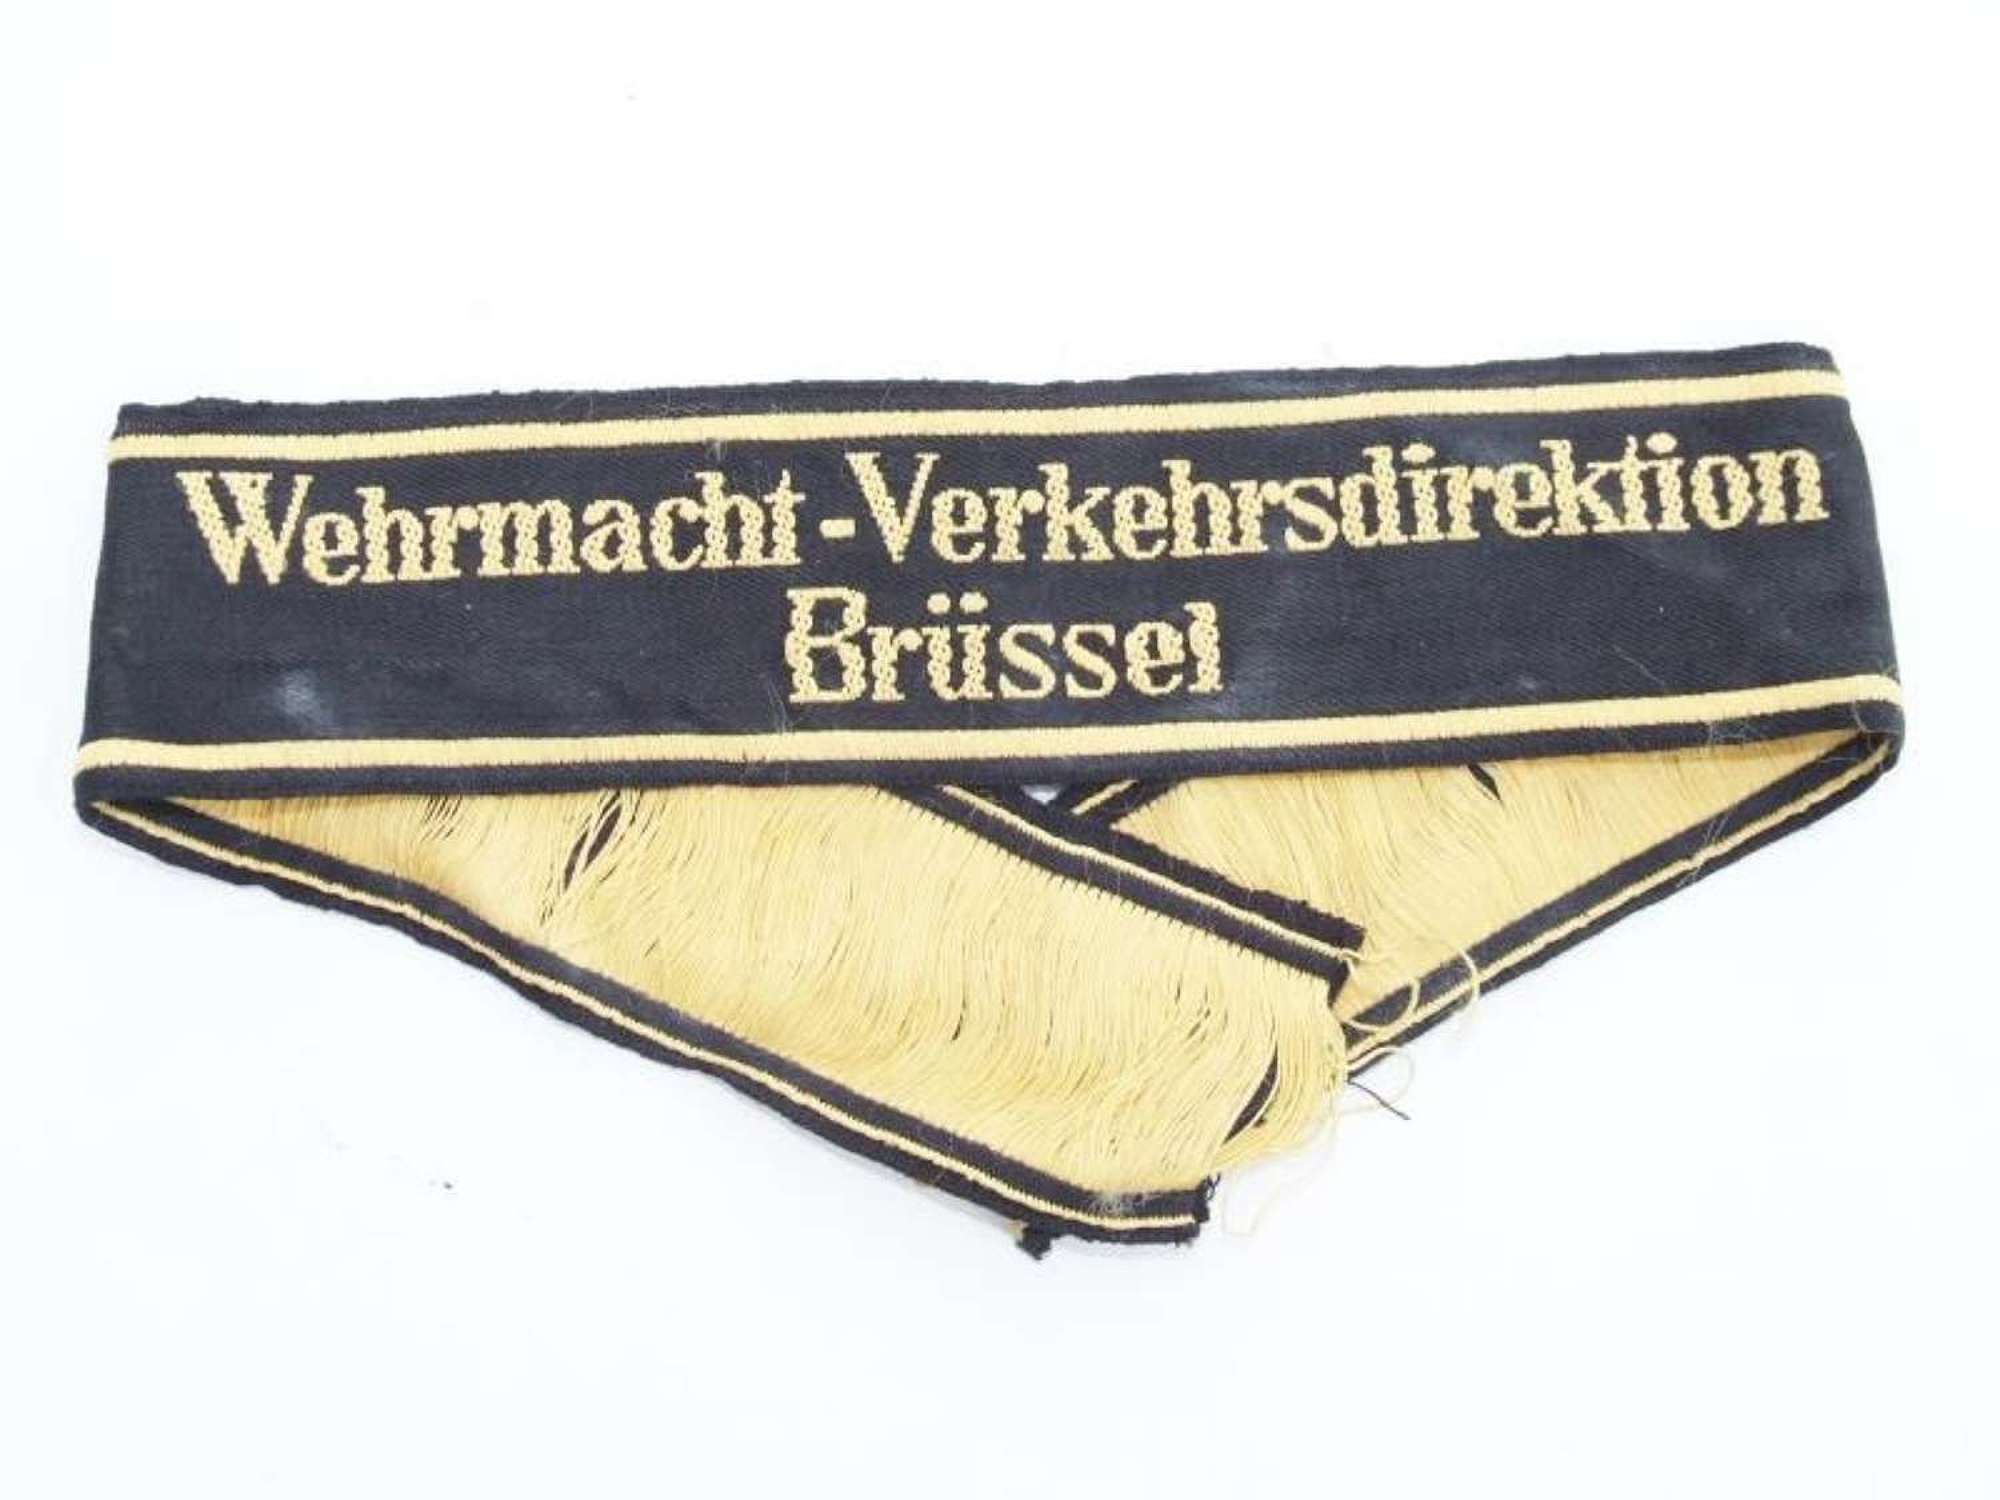 Wehrmacht-Verkehrsdirektion Brussels Sleeveband